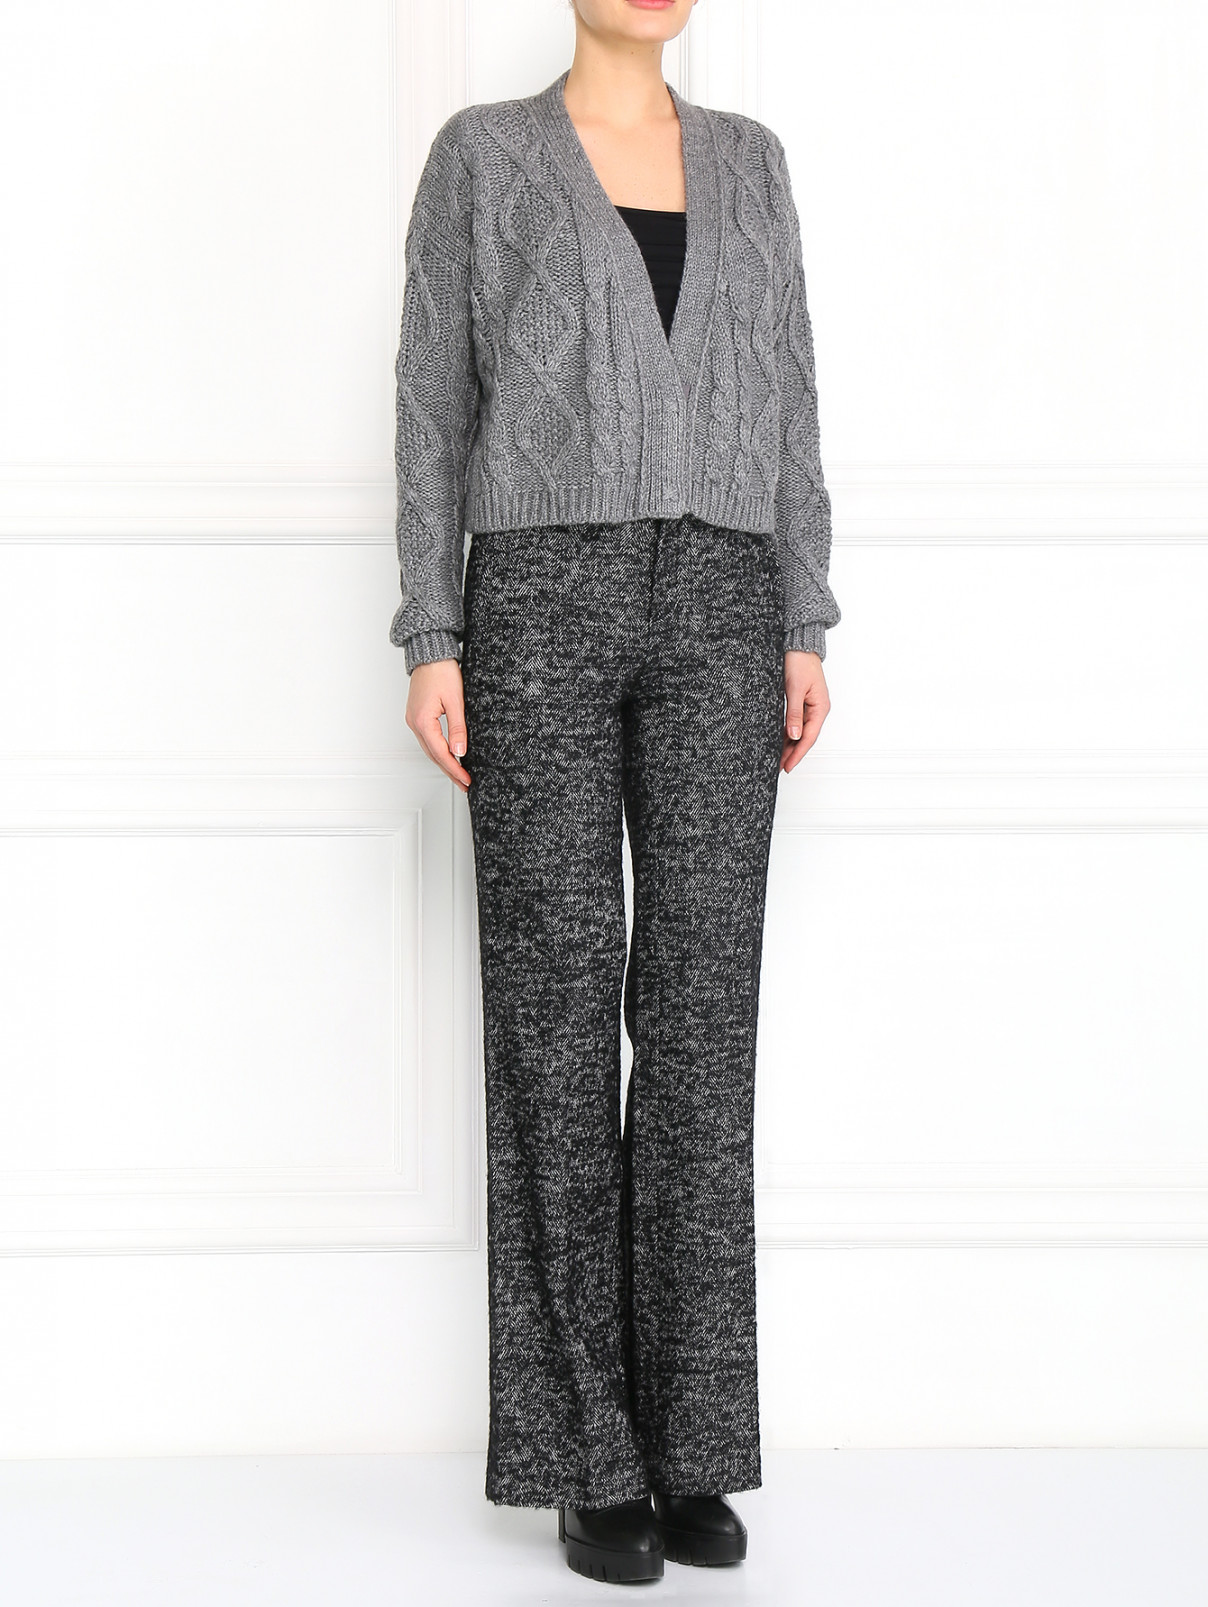 Прямые брюки из шерсти Jean Paul Gaultier  –  Модель Общий вид  – Цвет:  Серый